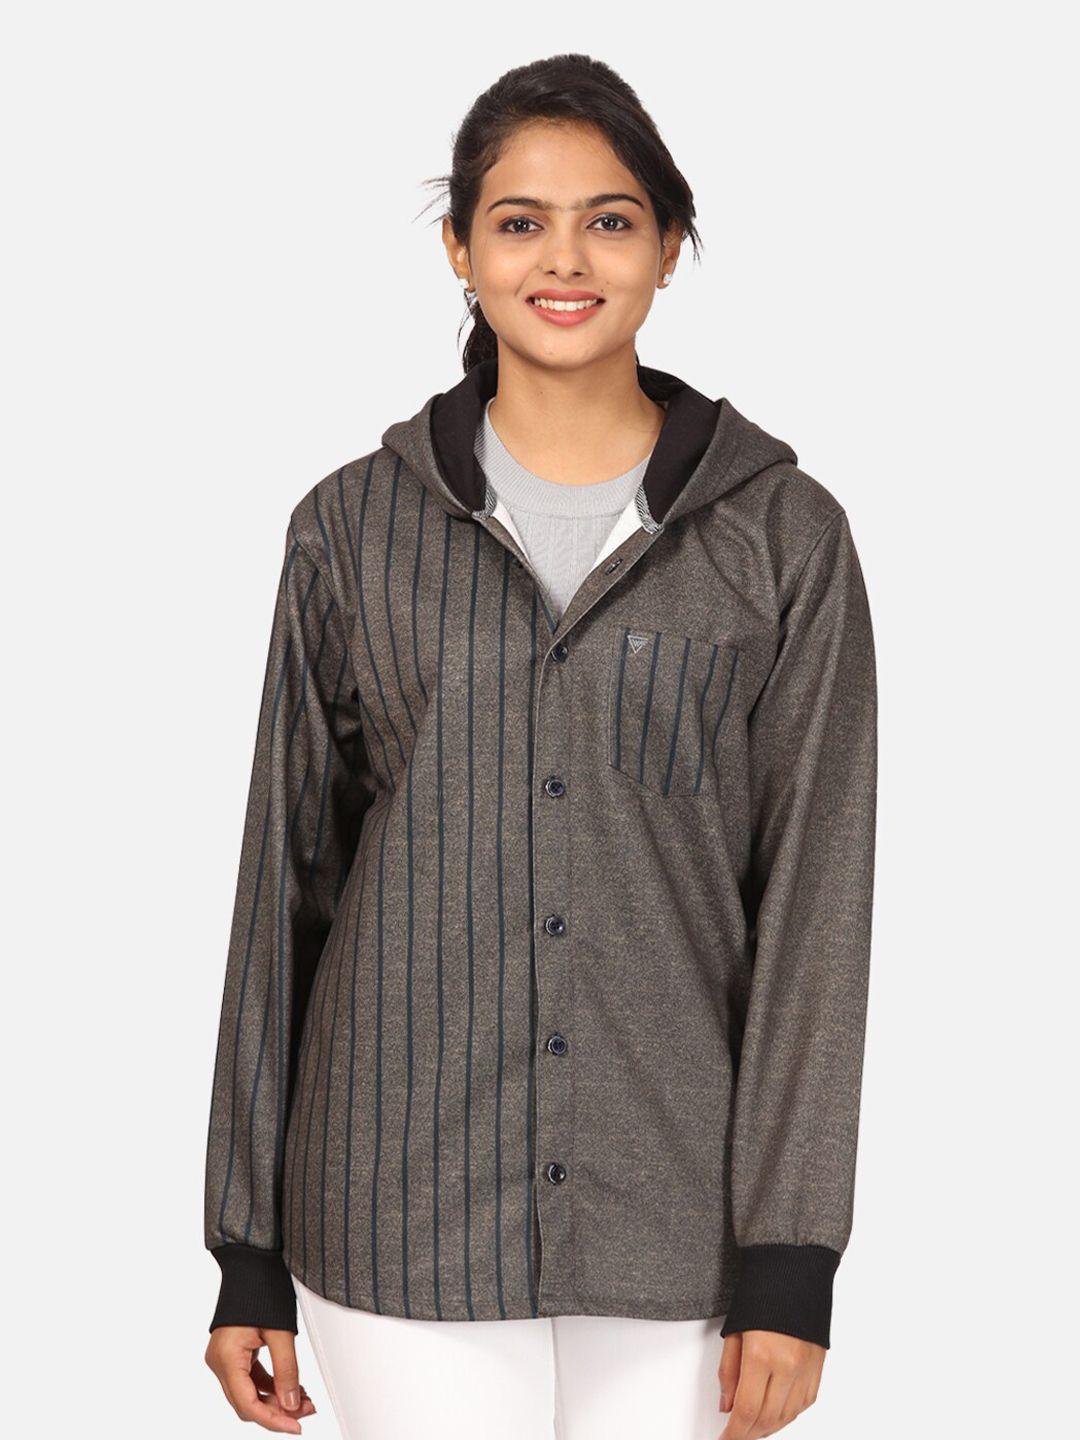 hellcat women coffee brown striped fleece hooded sweatshirt